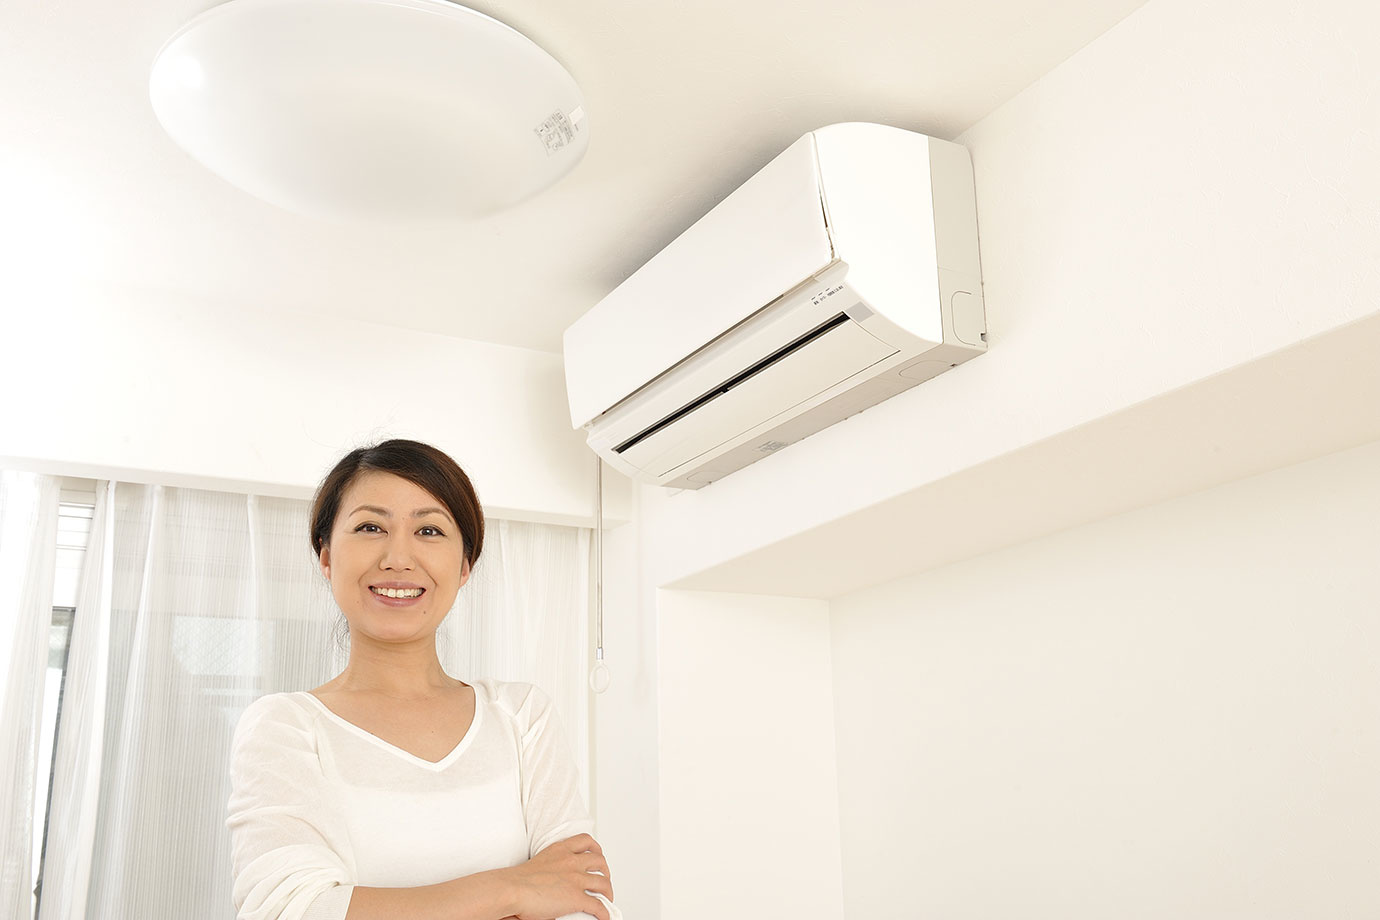 暖さより電気代が気になる方に！エアコン付き物件の賢い選び方4個＆暖房費を押さえる3個の方法